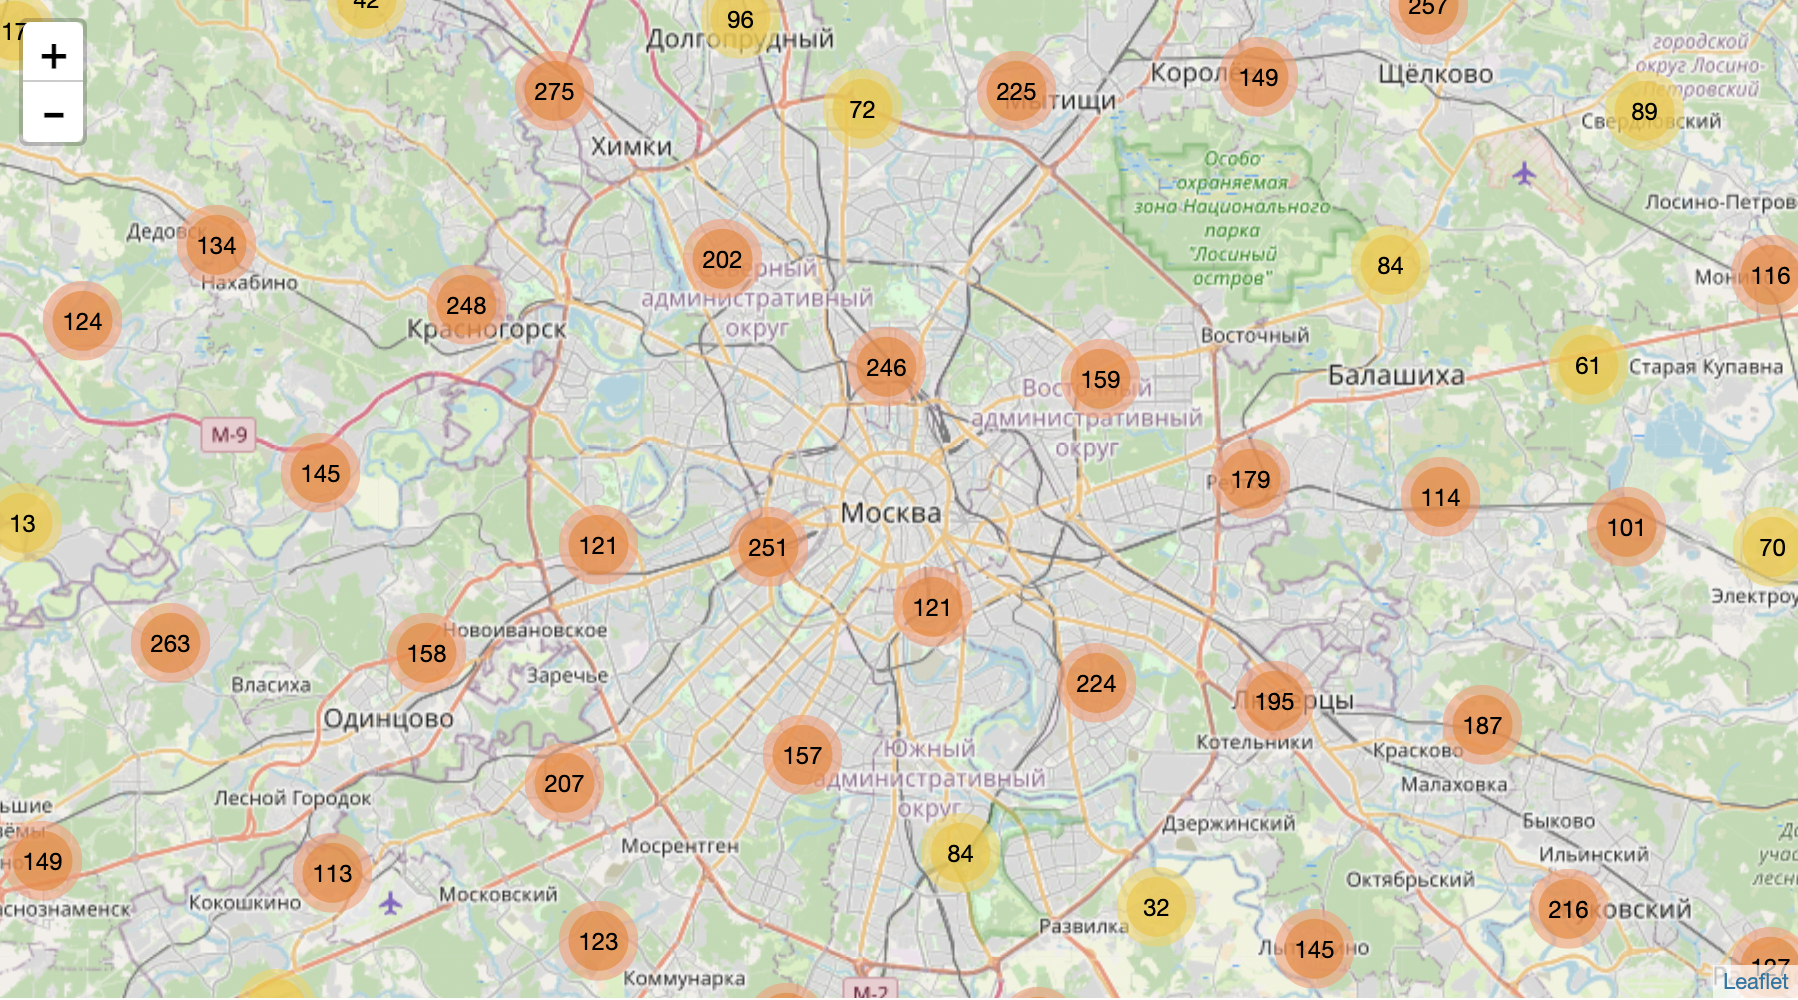 Карту с данными клиентов. Карта данных. Интерактивная карта Москвы.